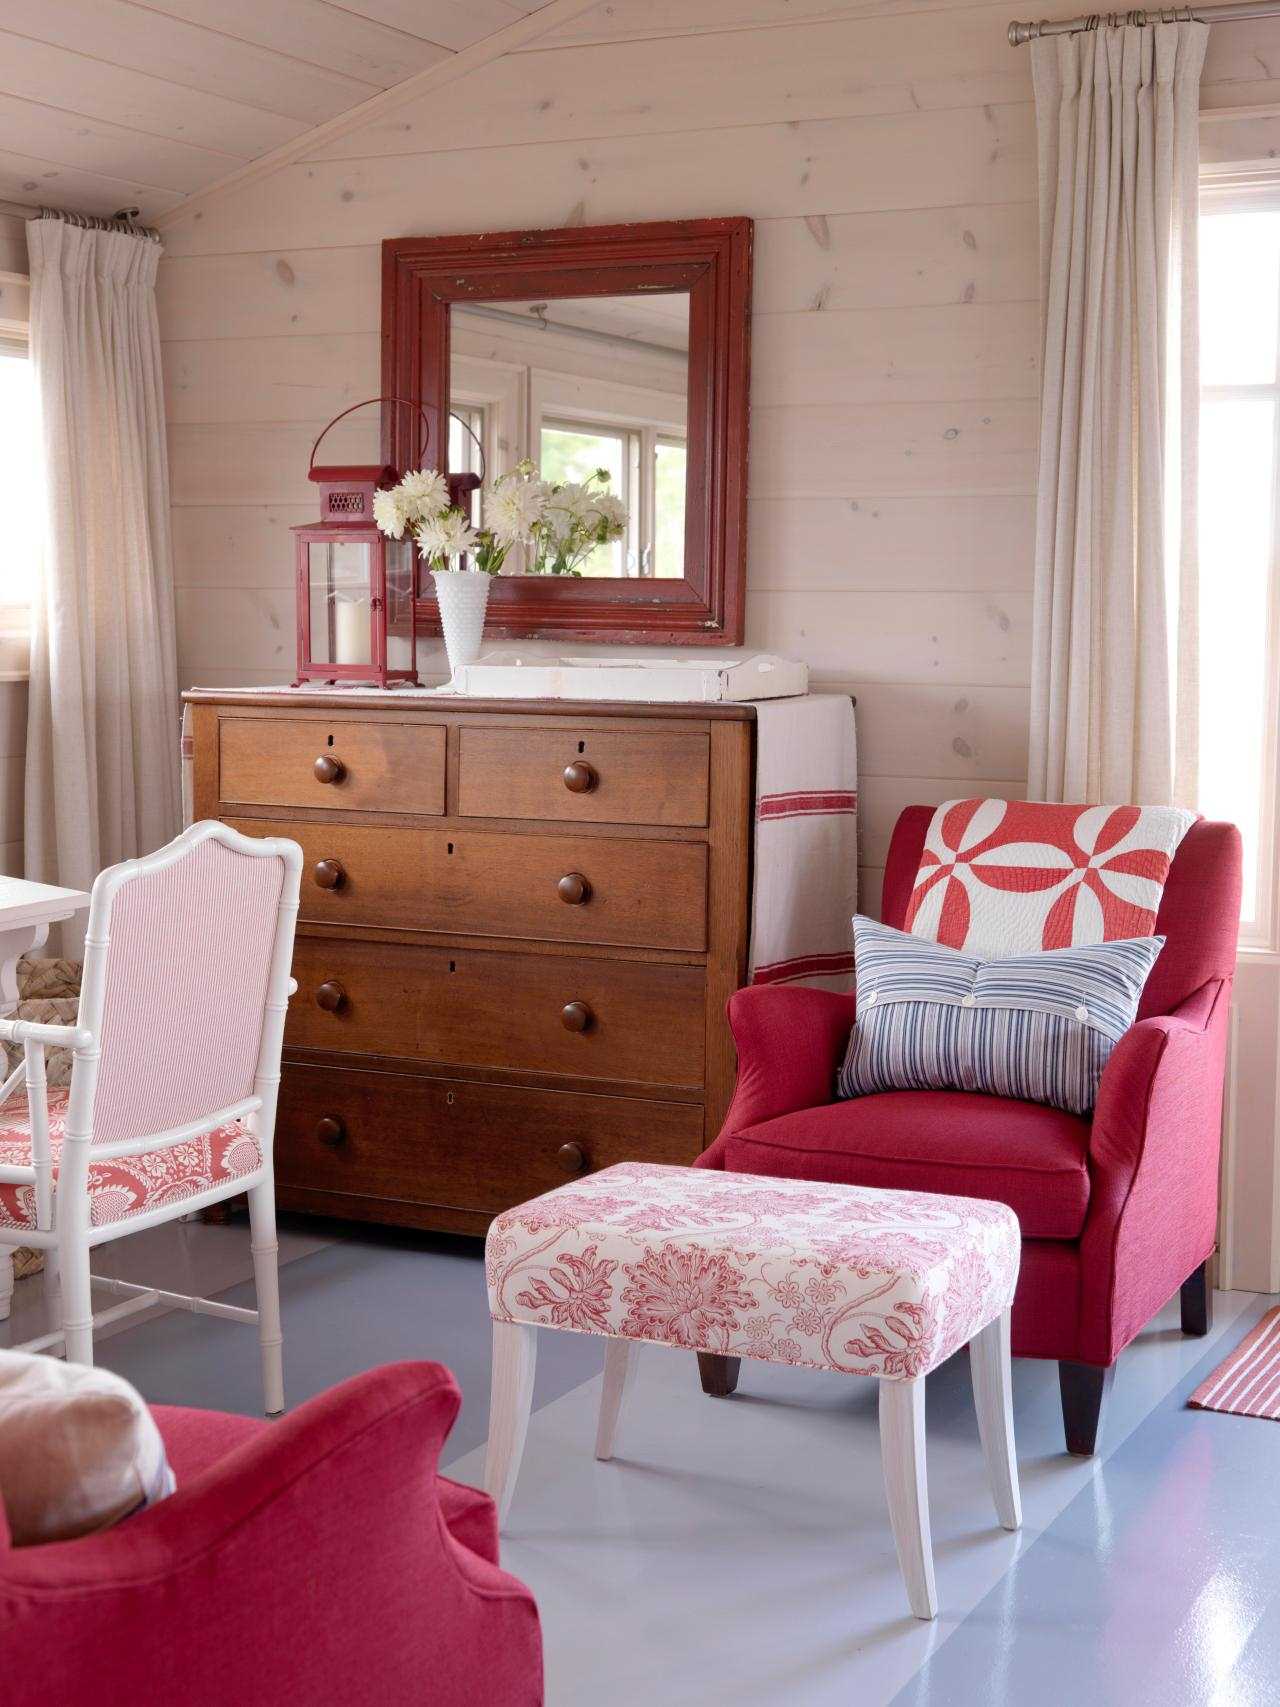 مزيج من اللون الوردي الفاتح في المناطق الداخلية للغرفة مع ألوان أخرى